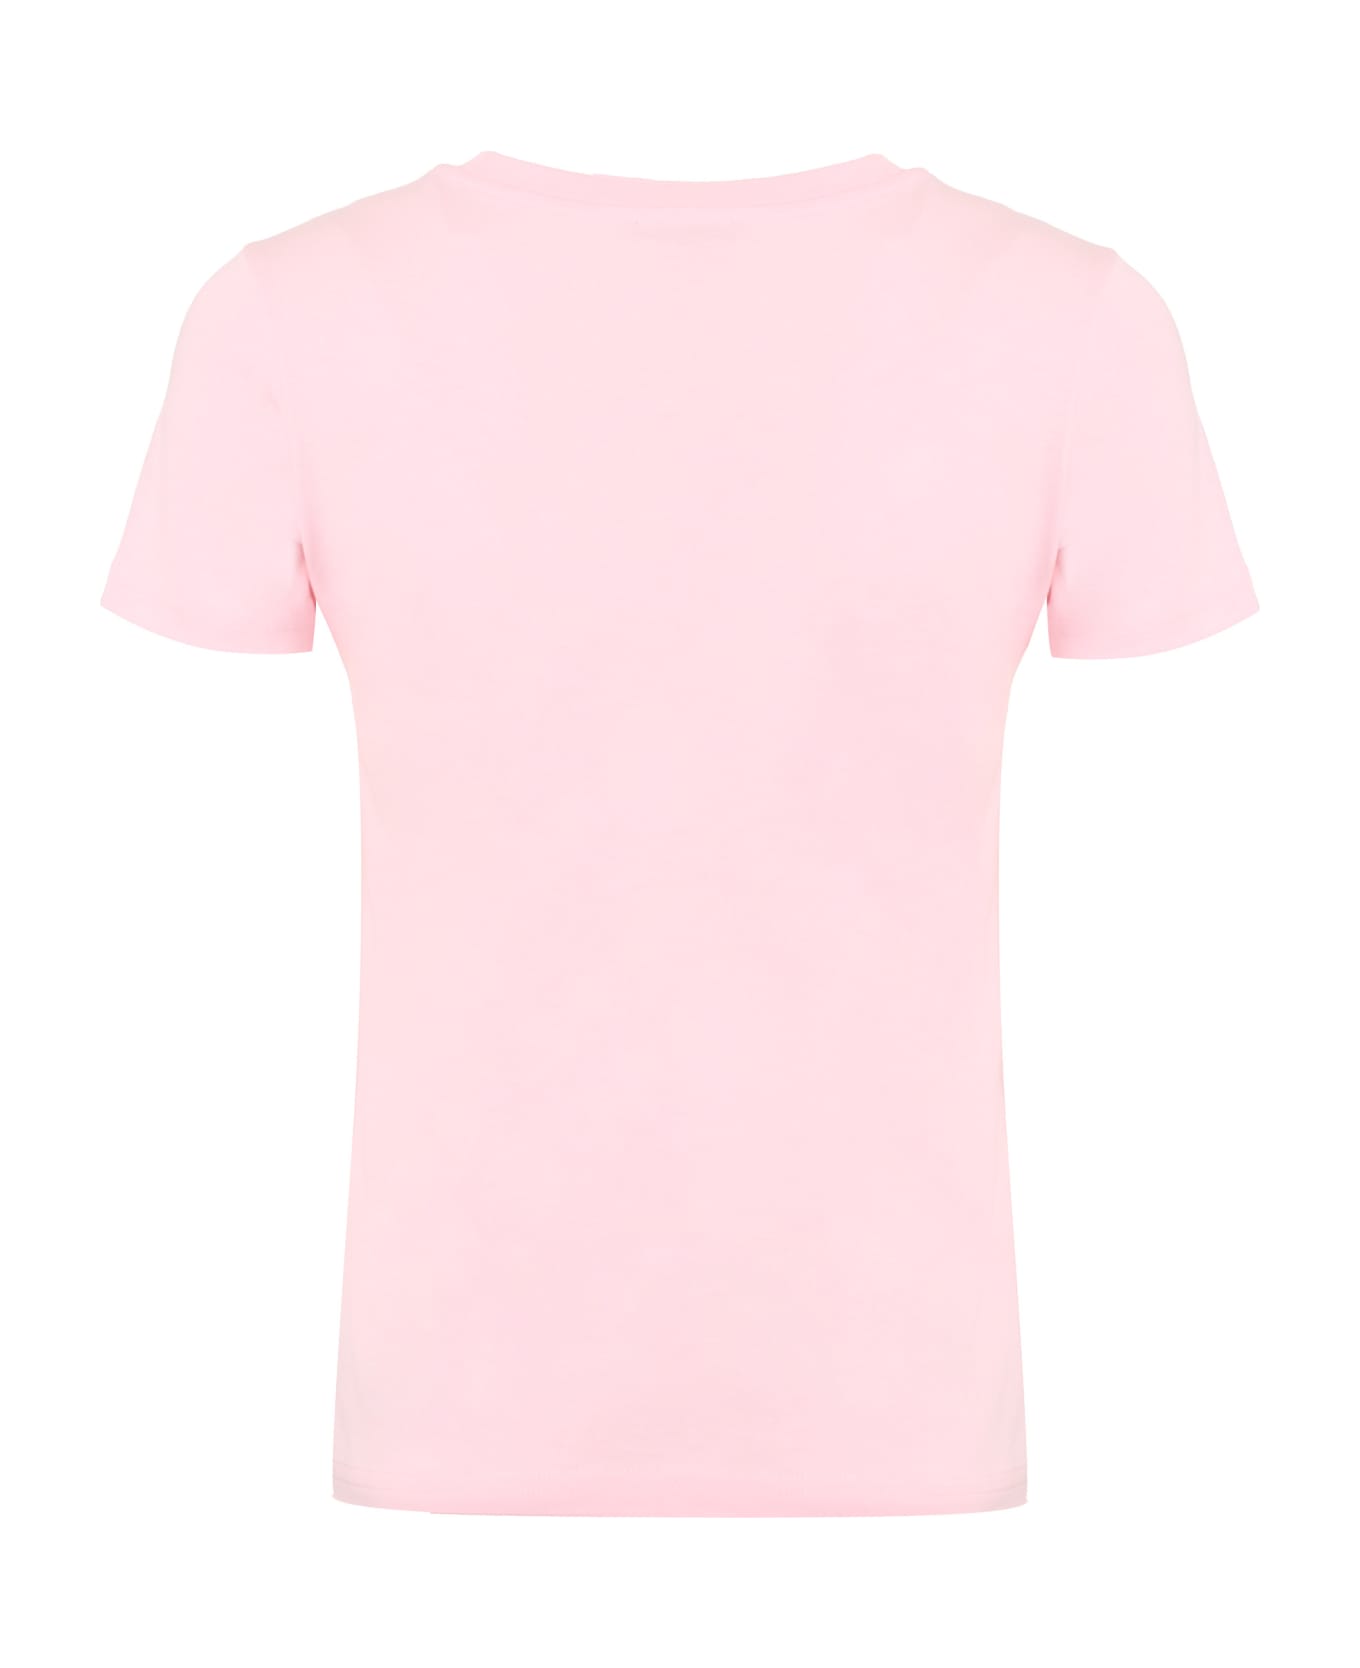 A.P.C. Denise Cotton Crew-neck T-shirt - Pink Tシャツ